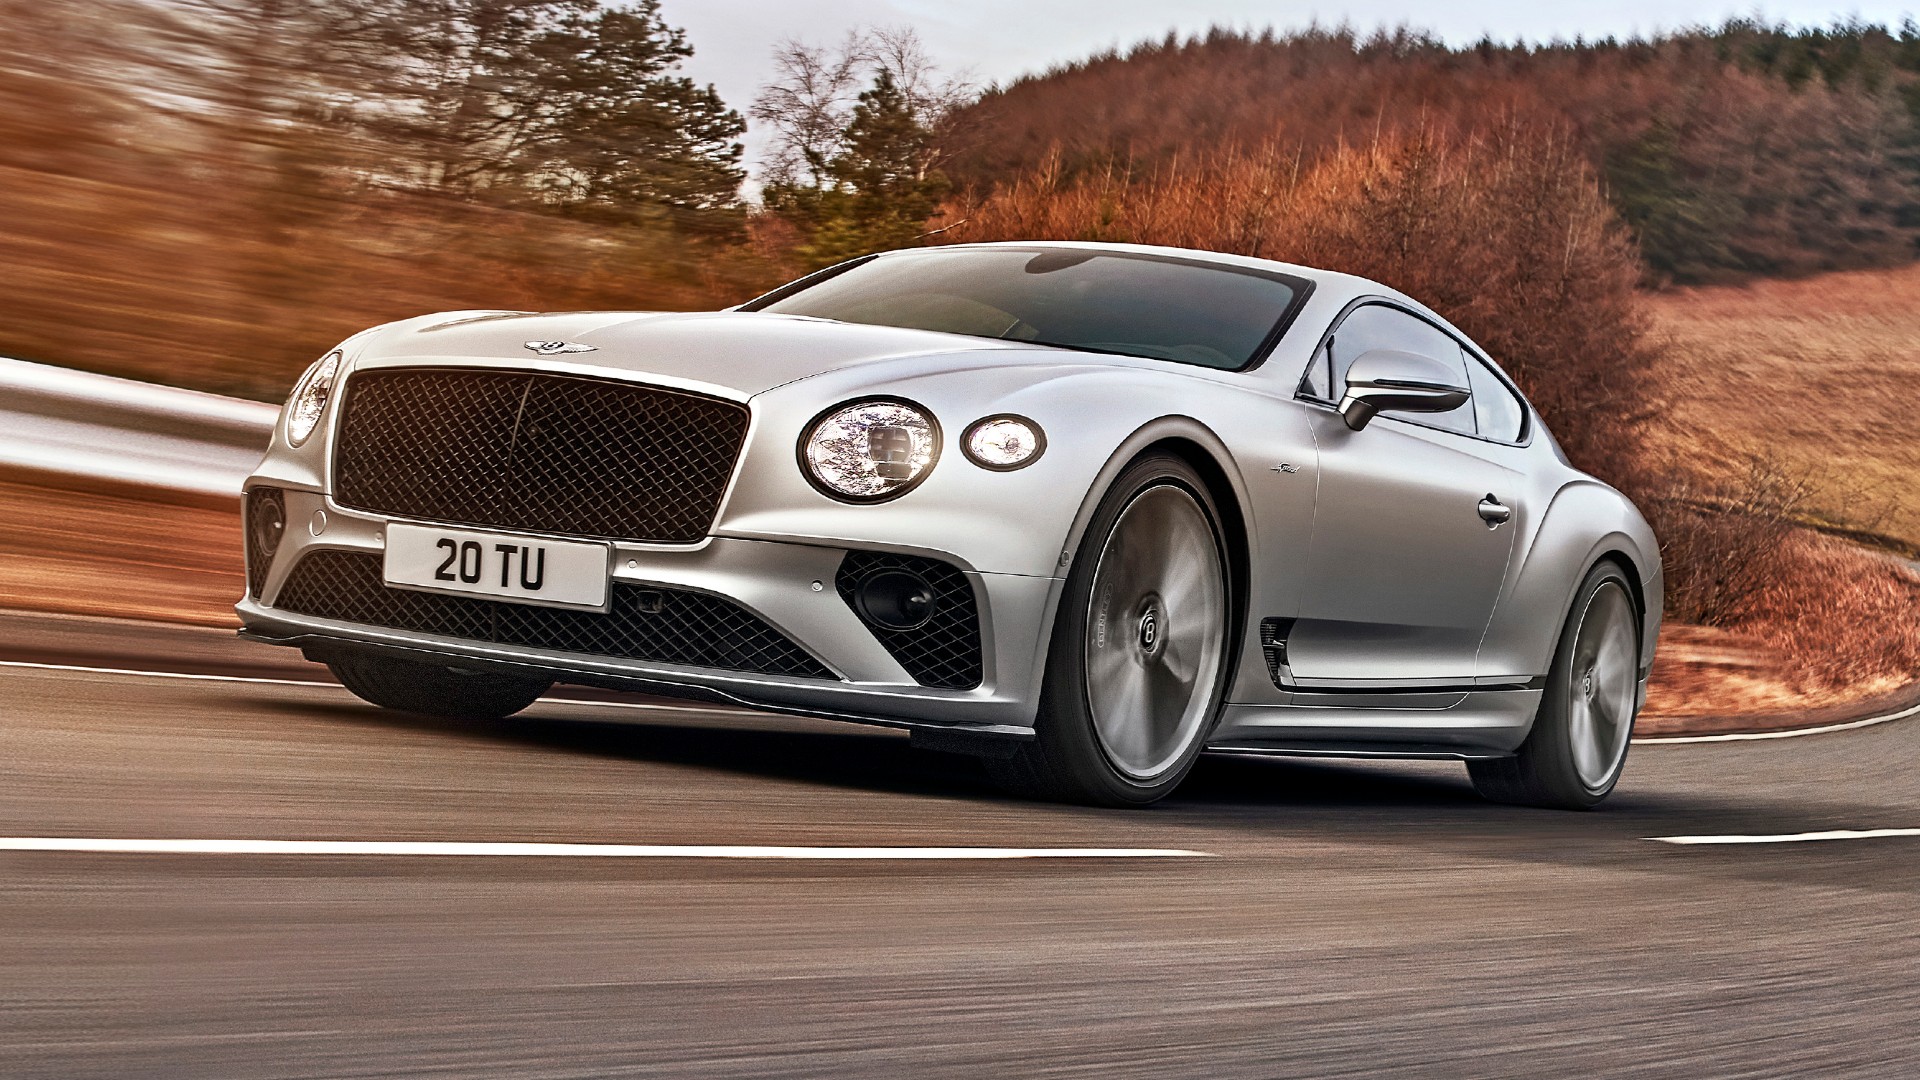 Η νέα Bentley είναι η απόλυτη έκφραση της δύναμης και της πολυτέλειας (video)